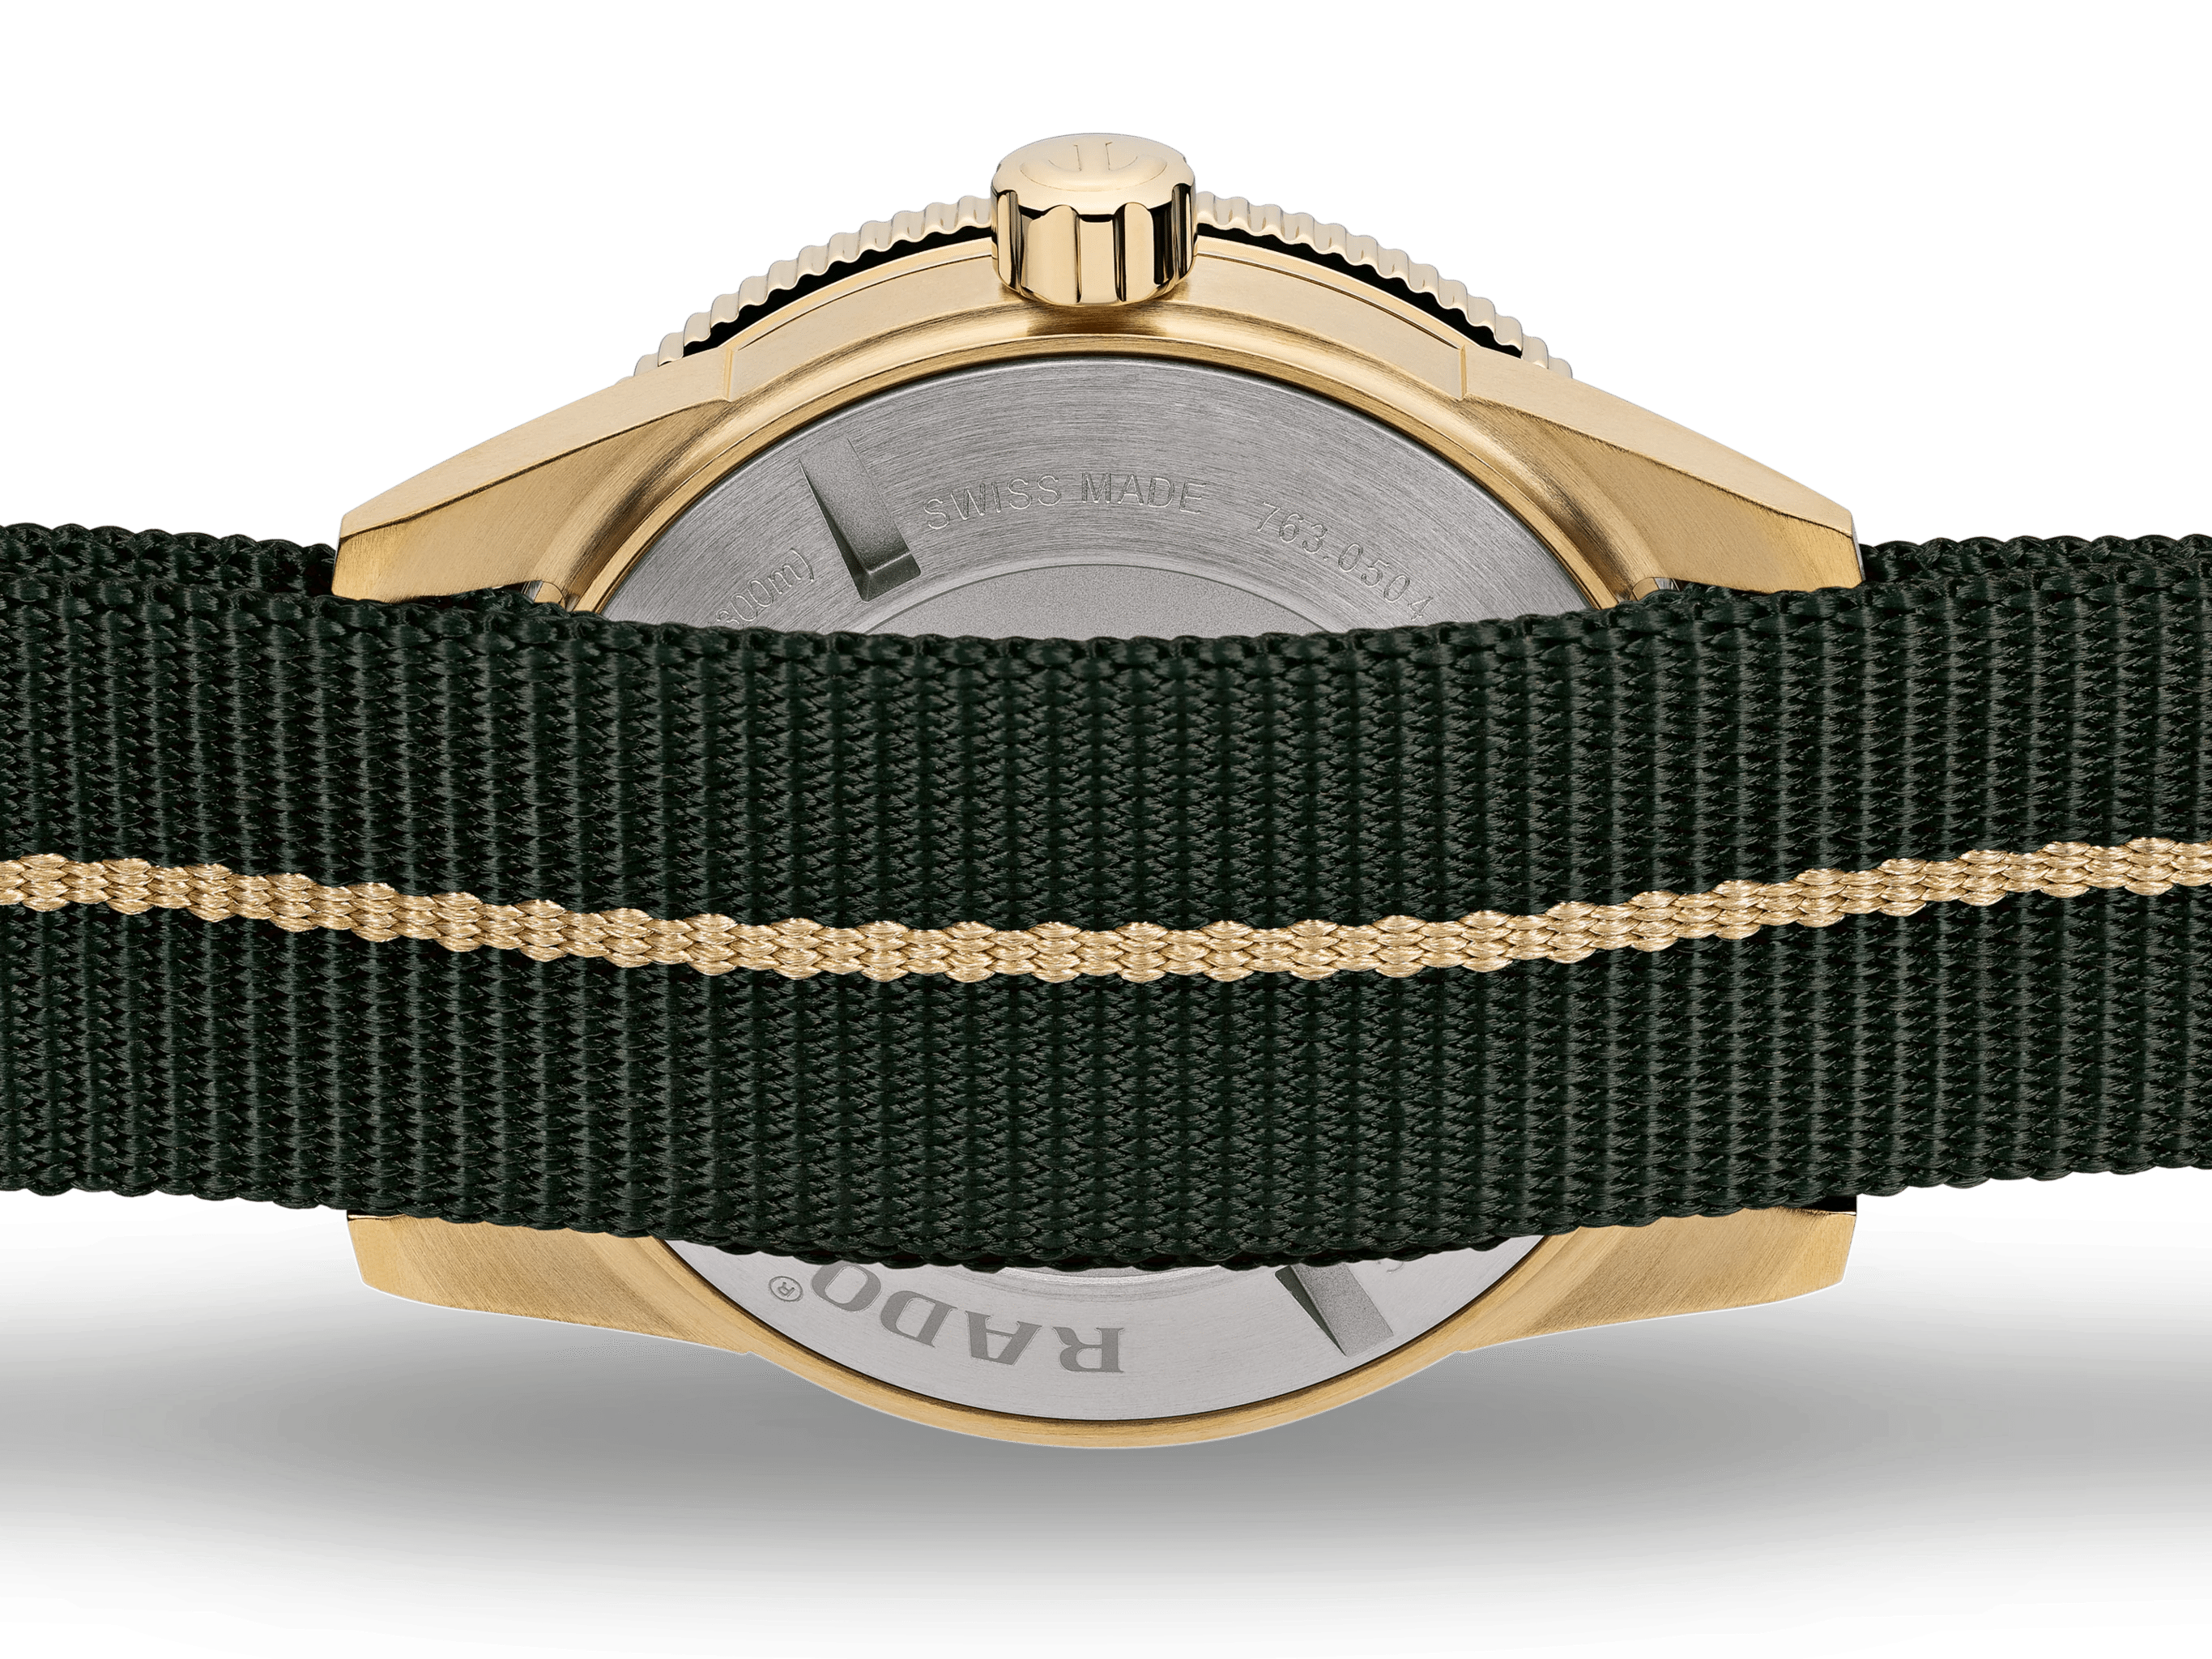 RADO Captain Cook Bronze 42mm Green Dial NATO Strap Men's Watch R32504317